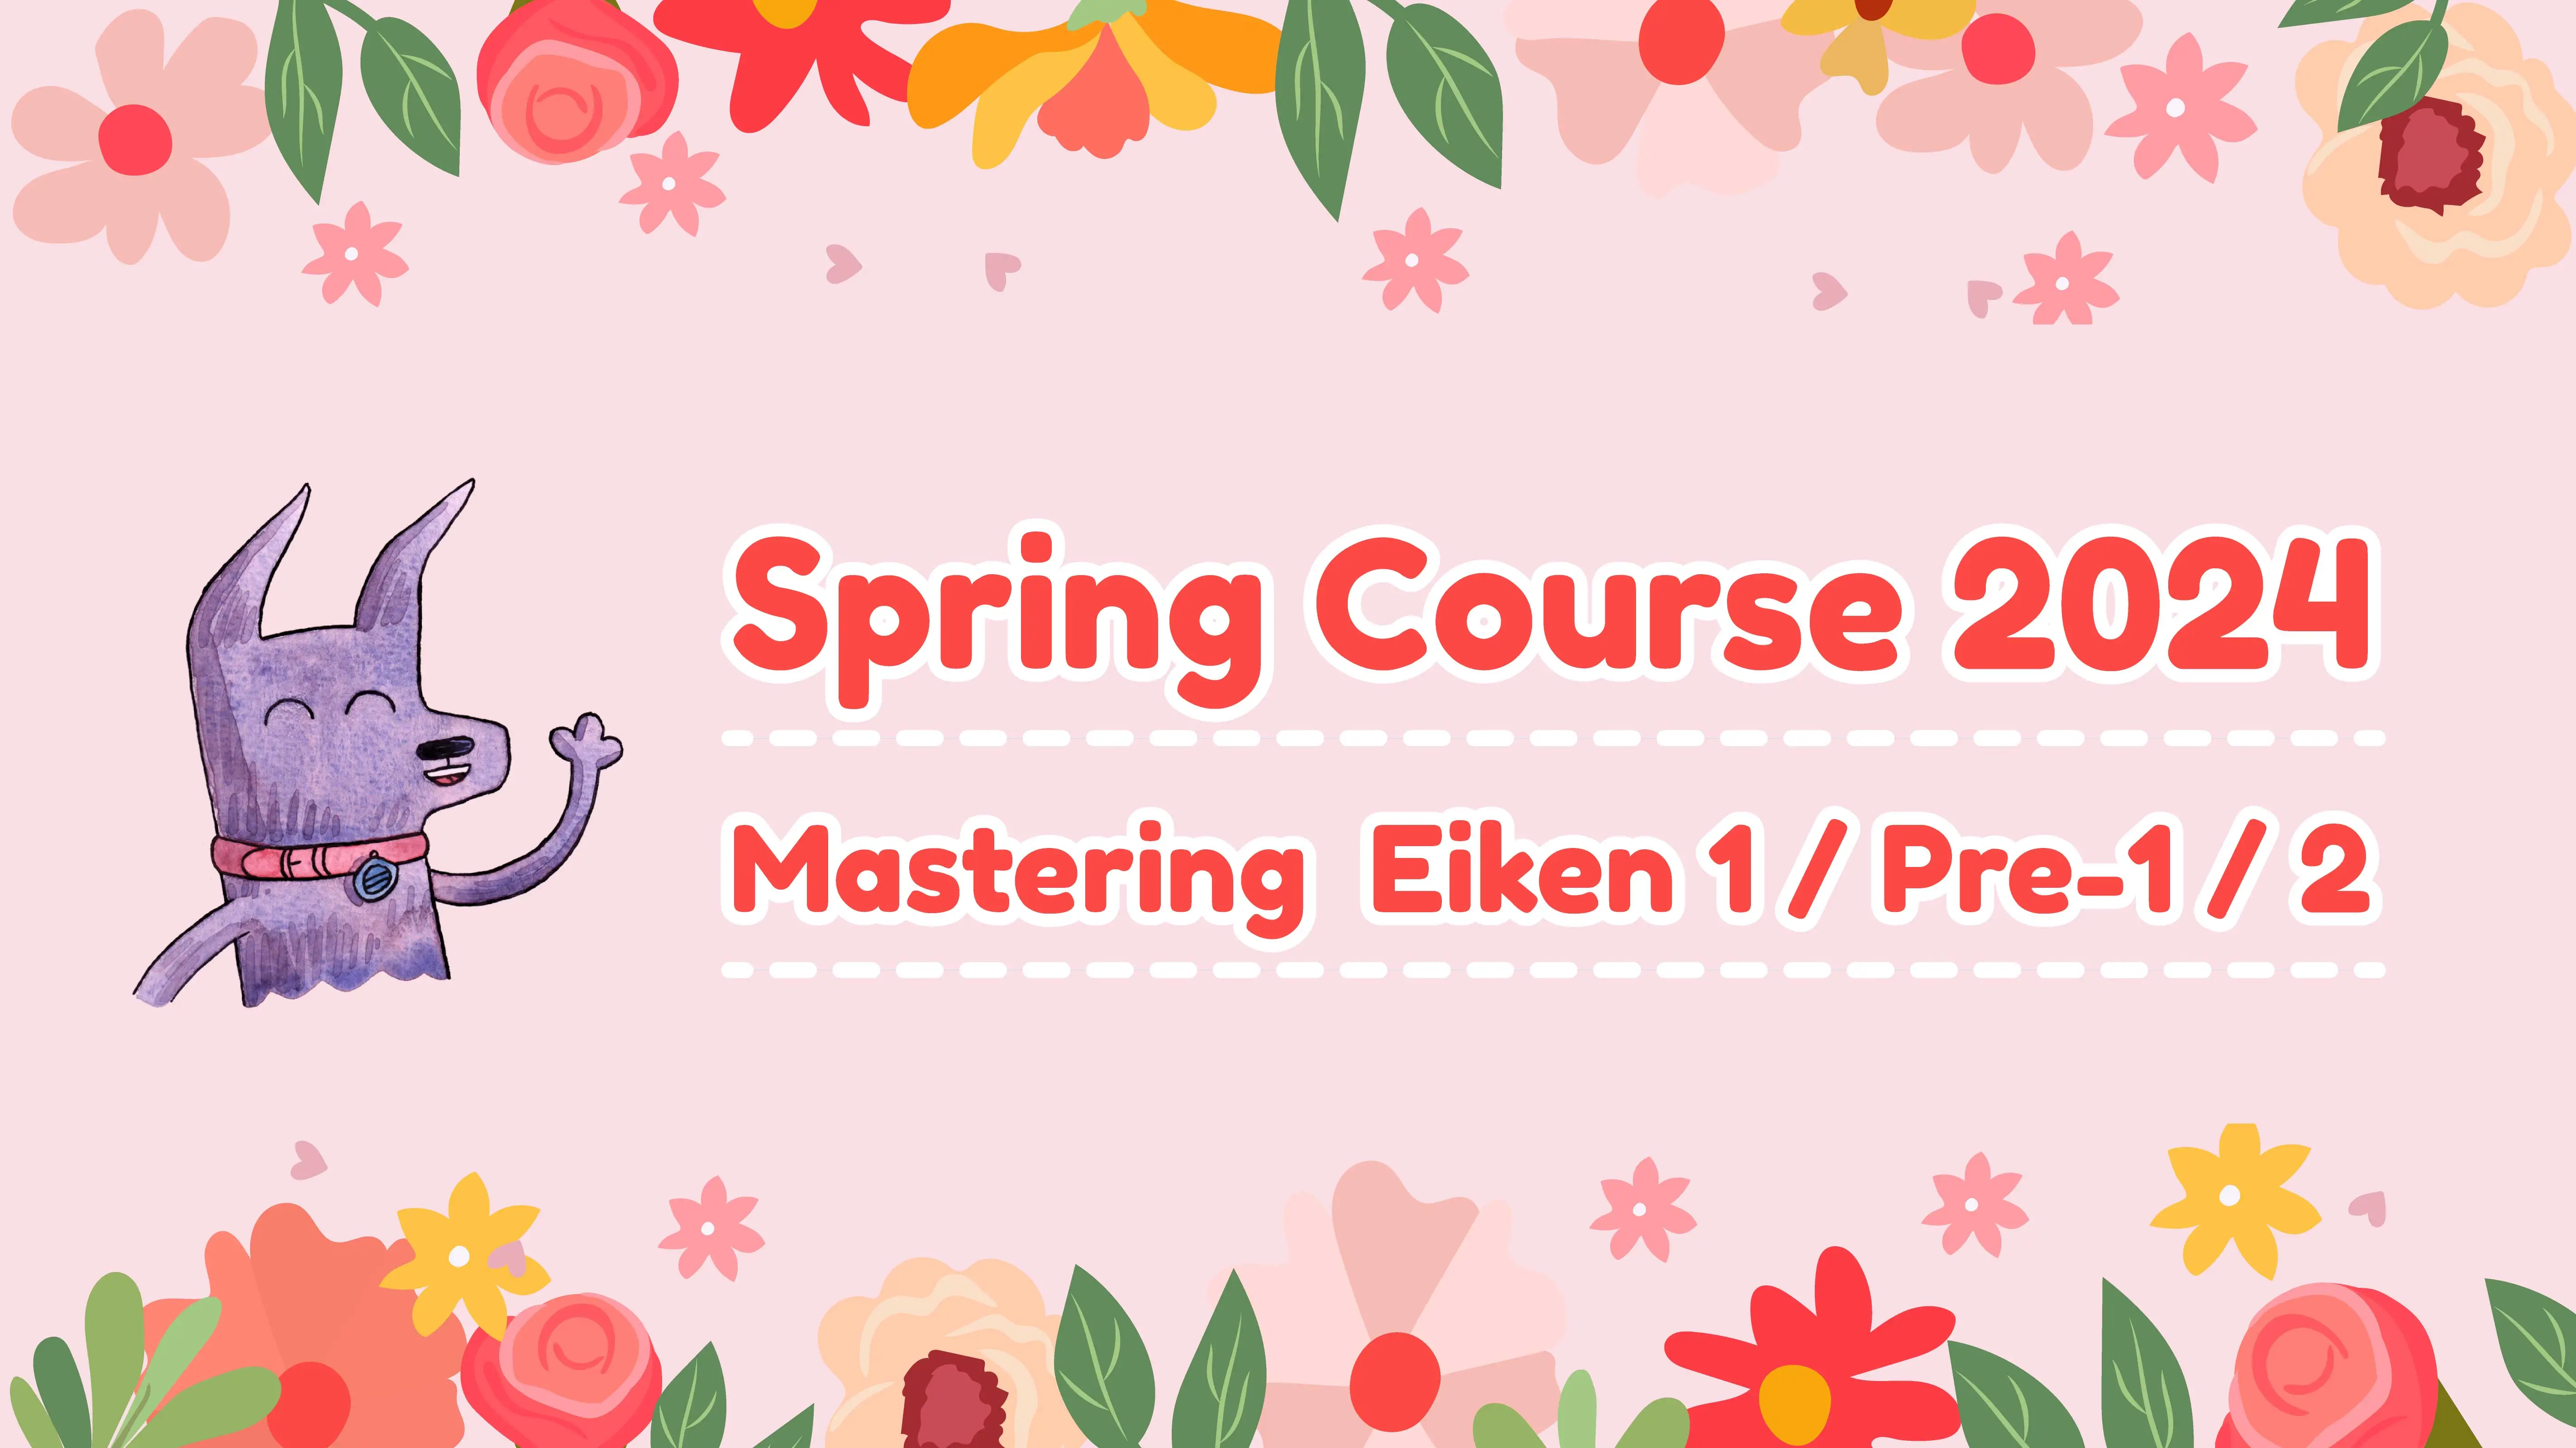 Spring Course 2024 - Mastering Eiken 1/Pre-1/2